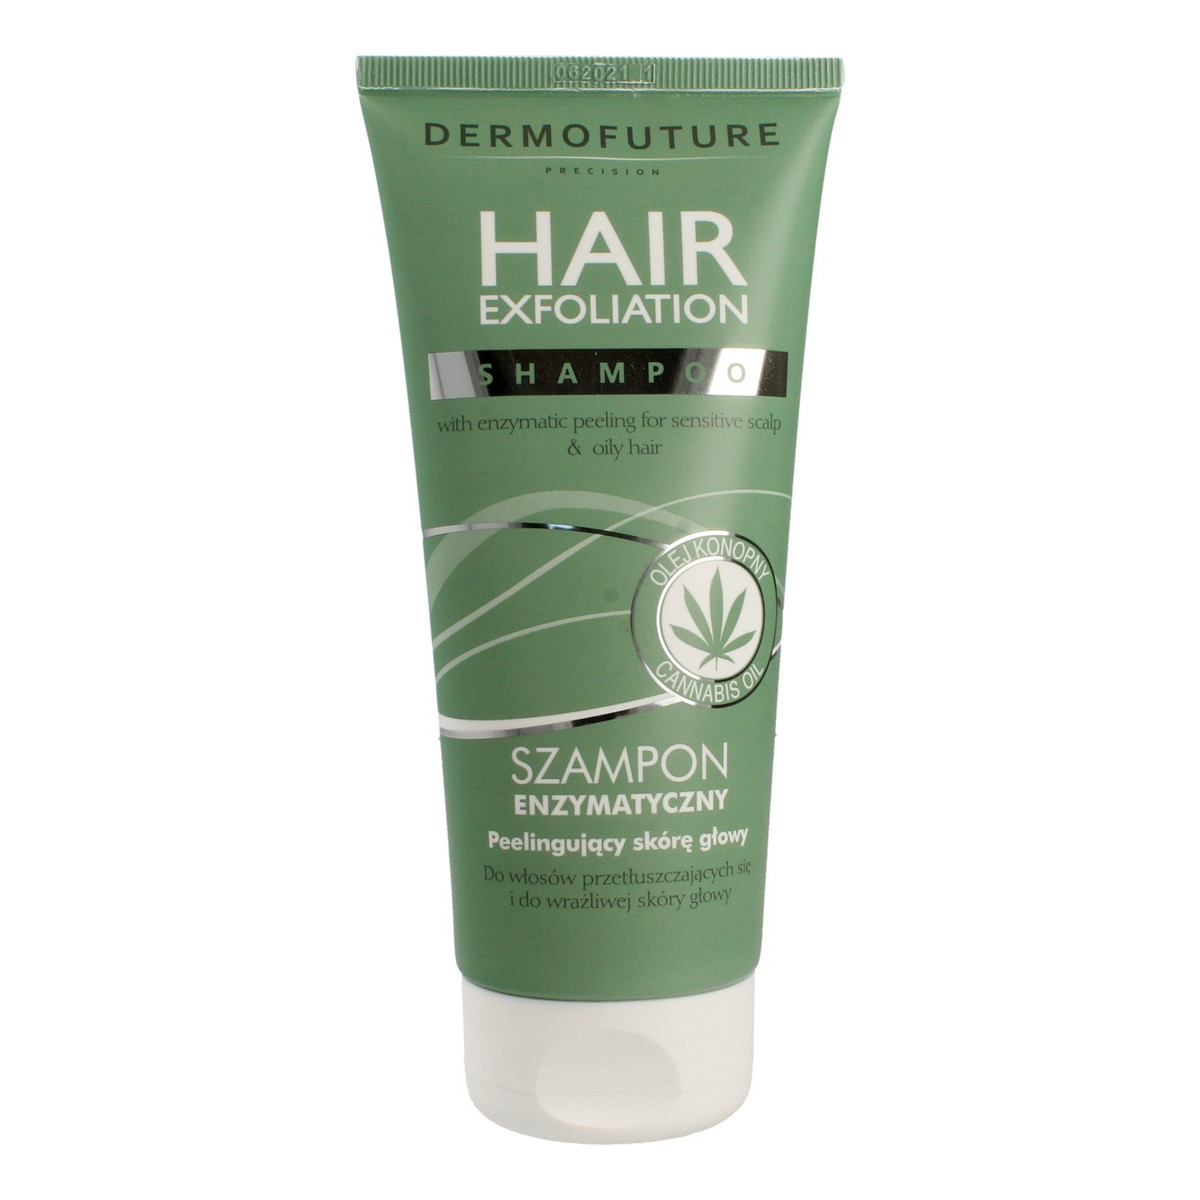 DermoFuture Precision Hair Exfoliation Szampon enzymatyczny peelingujący 200ml